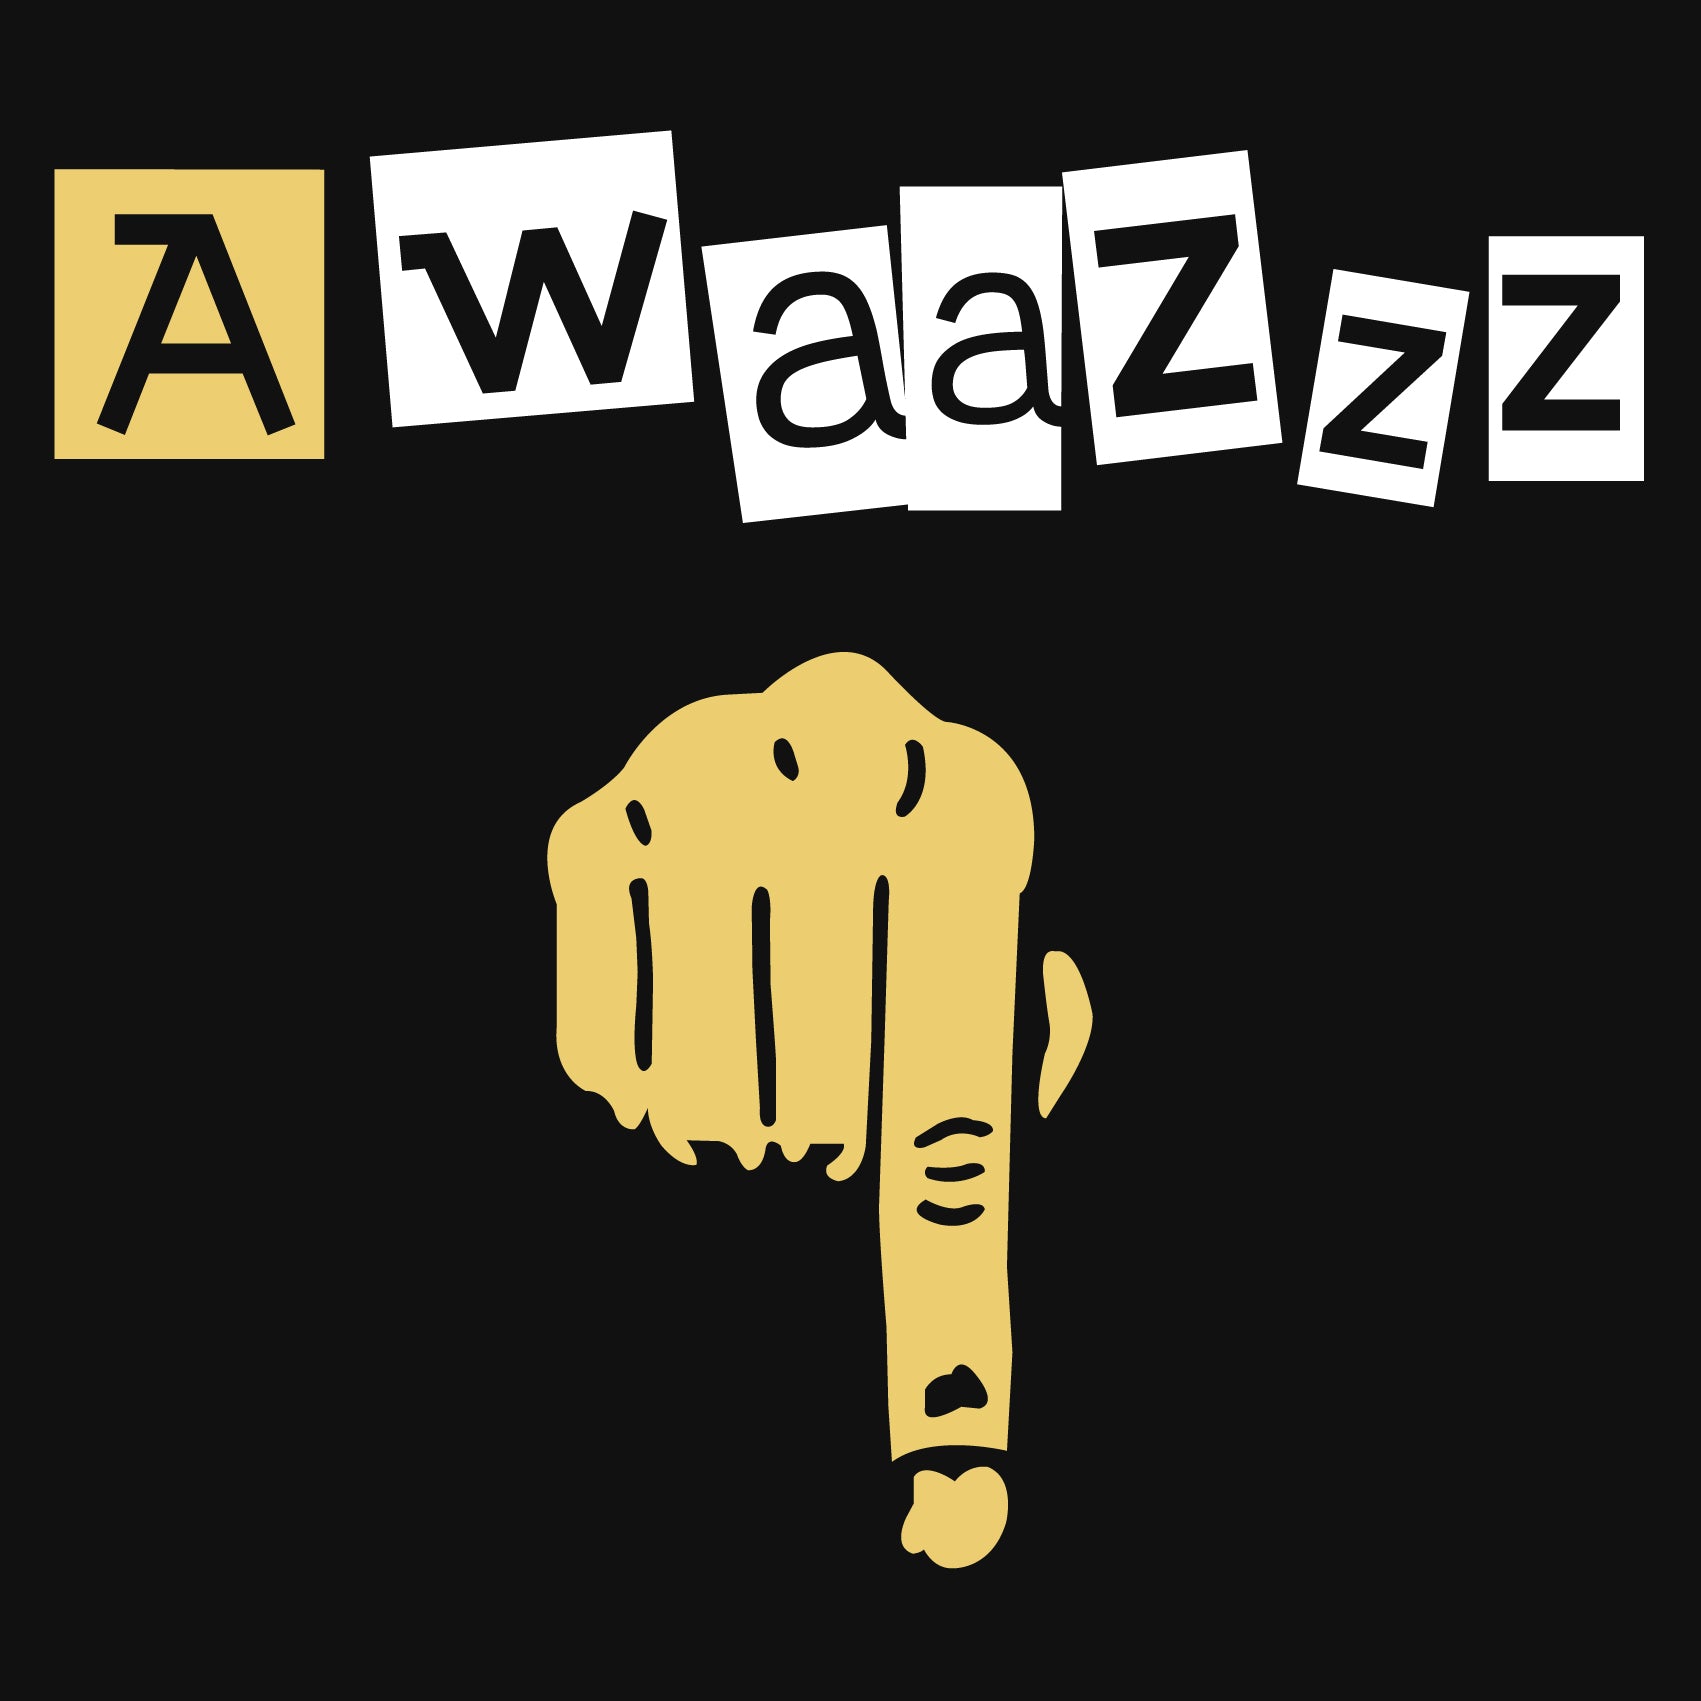 Awaaz Reactr Tshirts For Men - Eyewearlabs